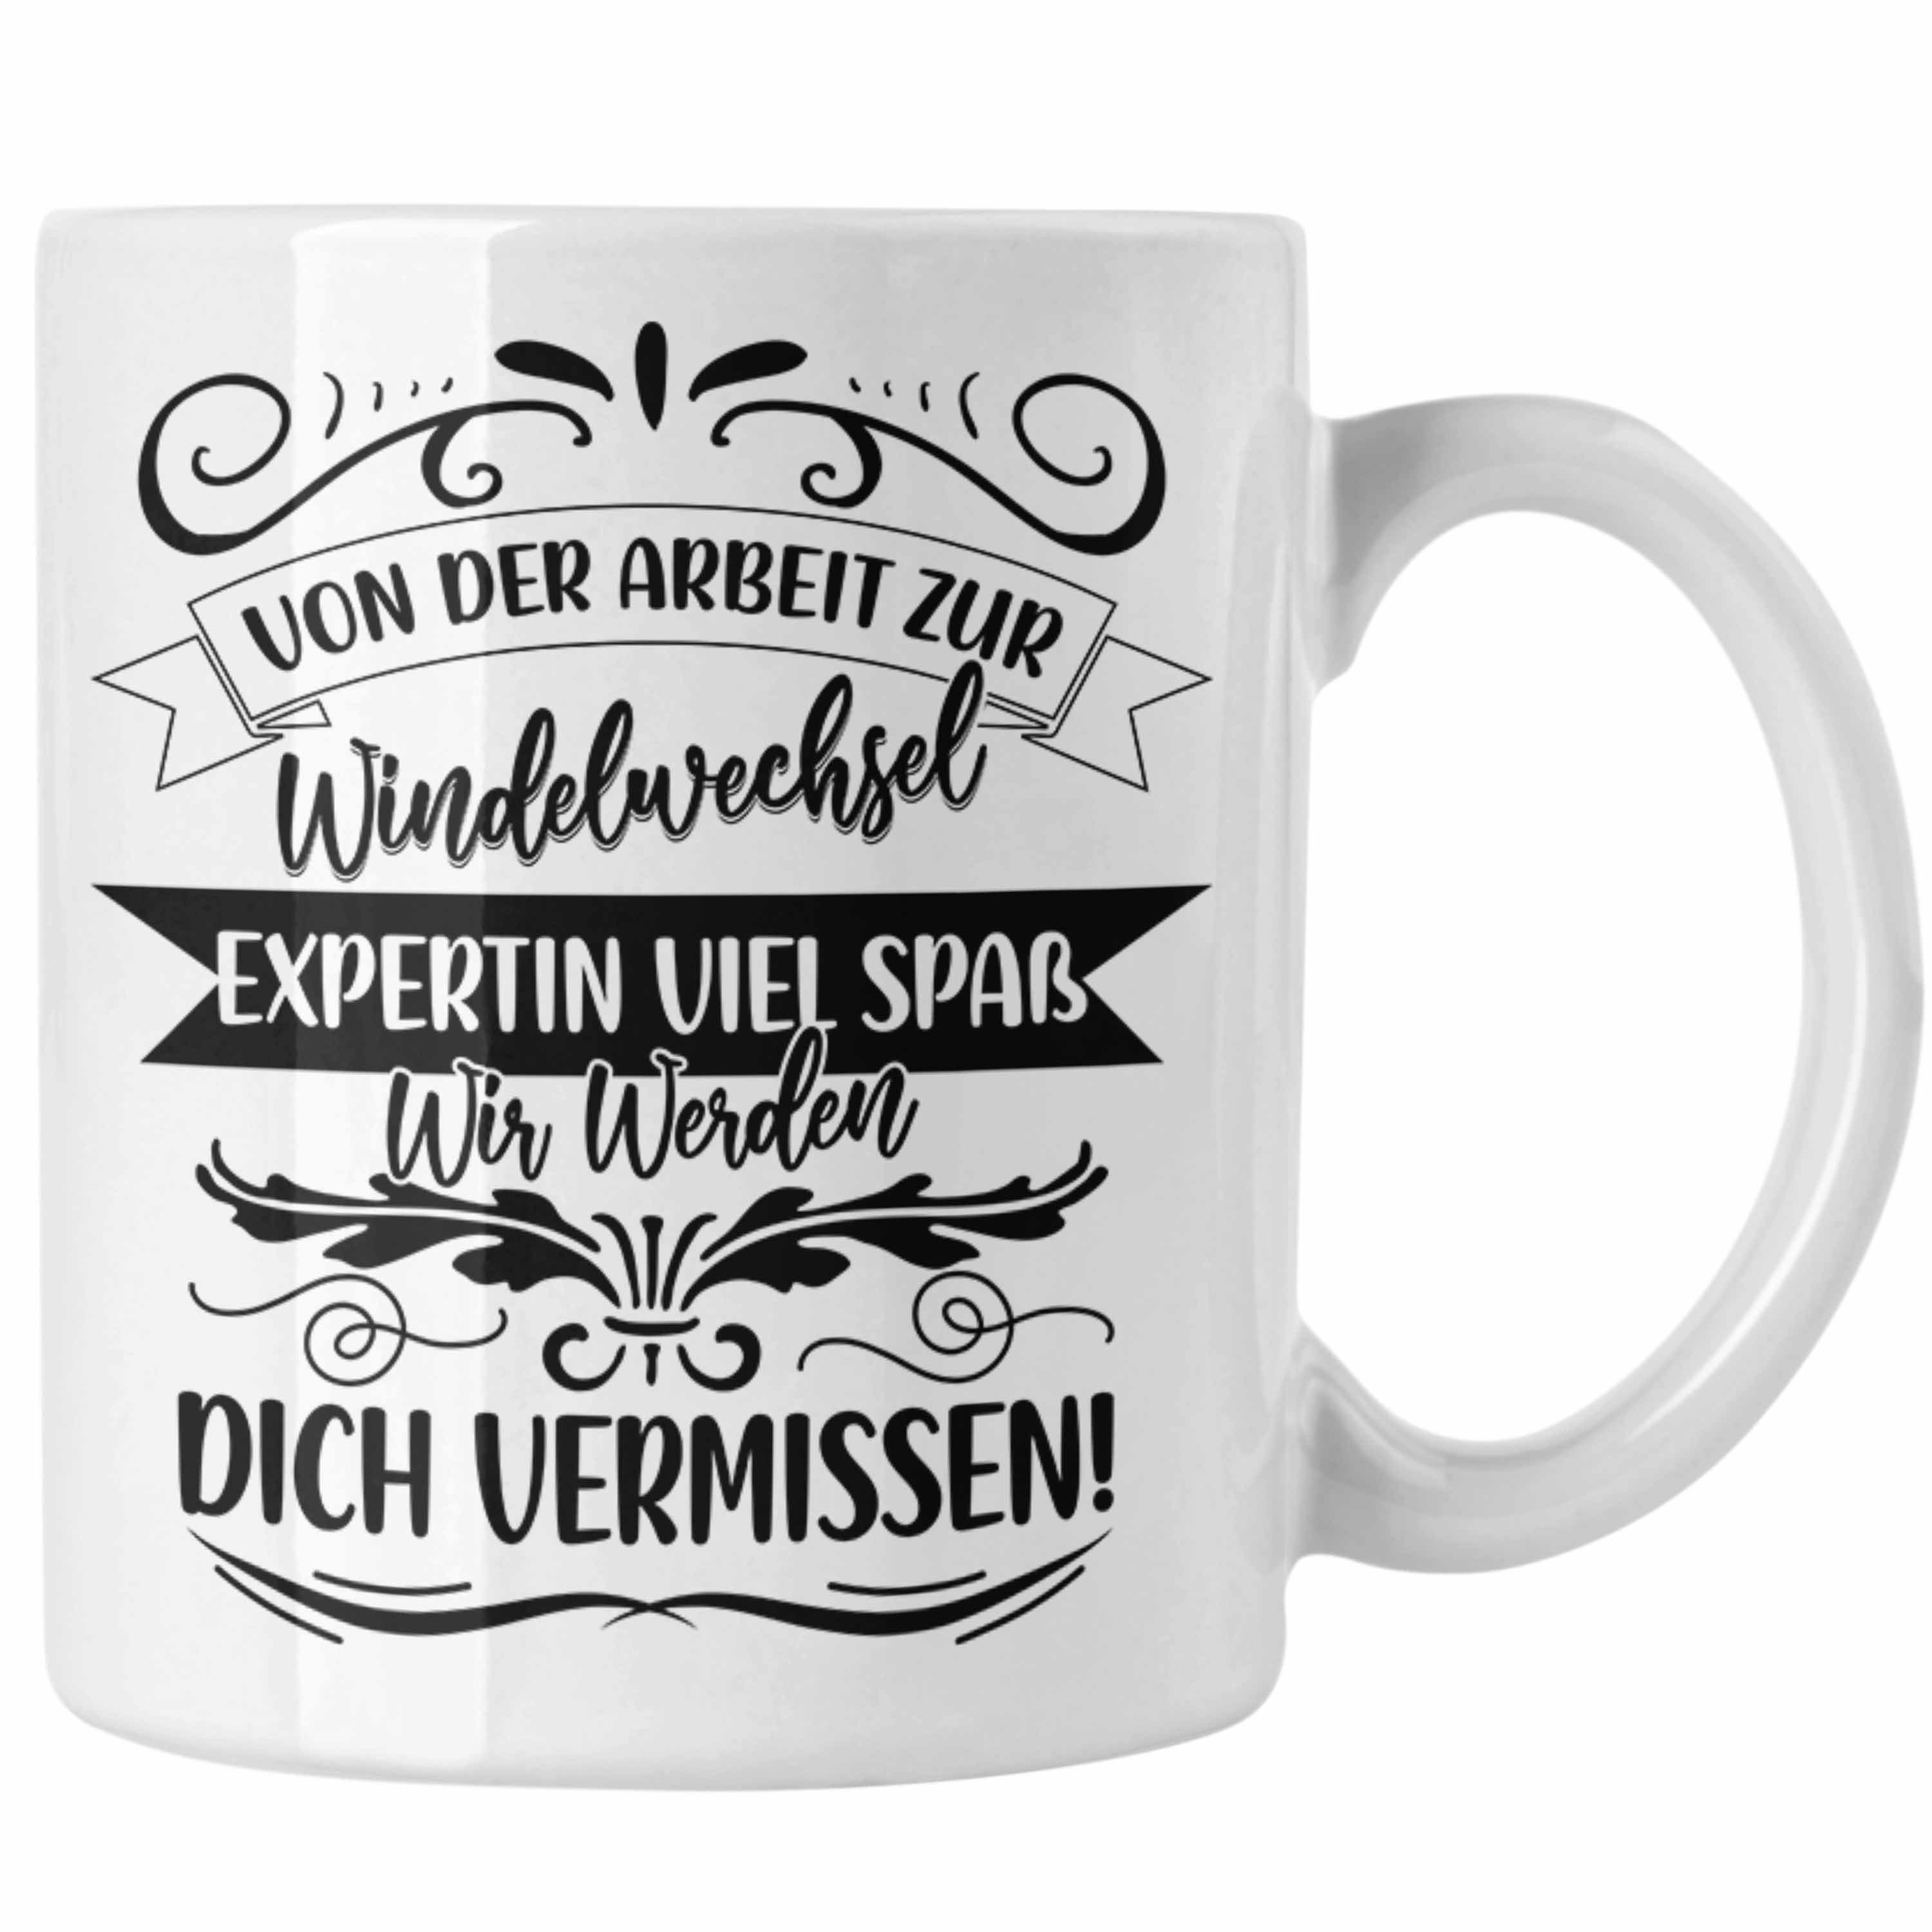 Trendation Tasse Mutterschutz Tasse Geschenk Abschied Mutterschutz Kaffeetasse Kollegi Weiss